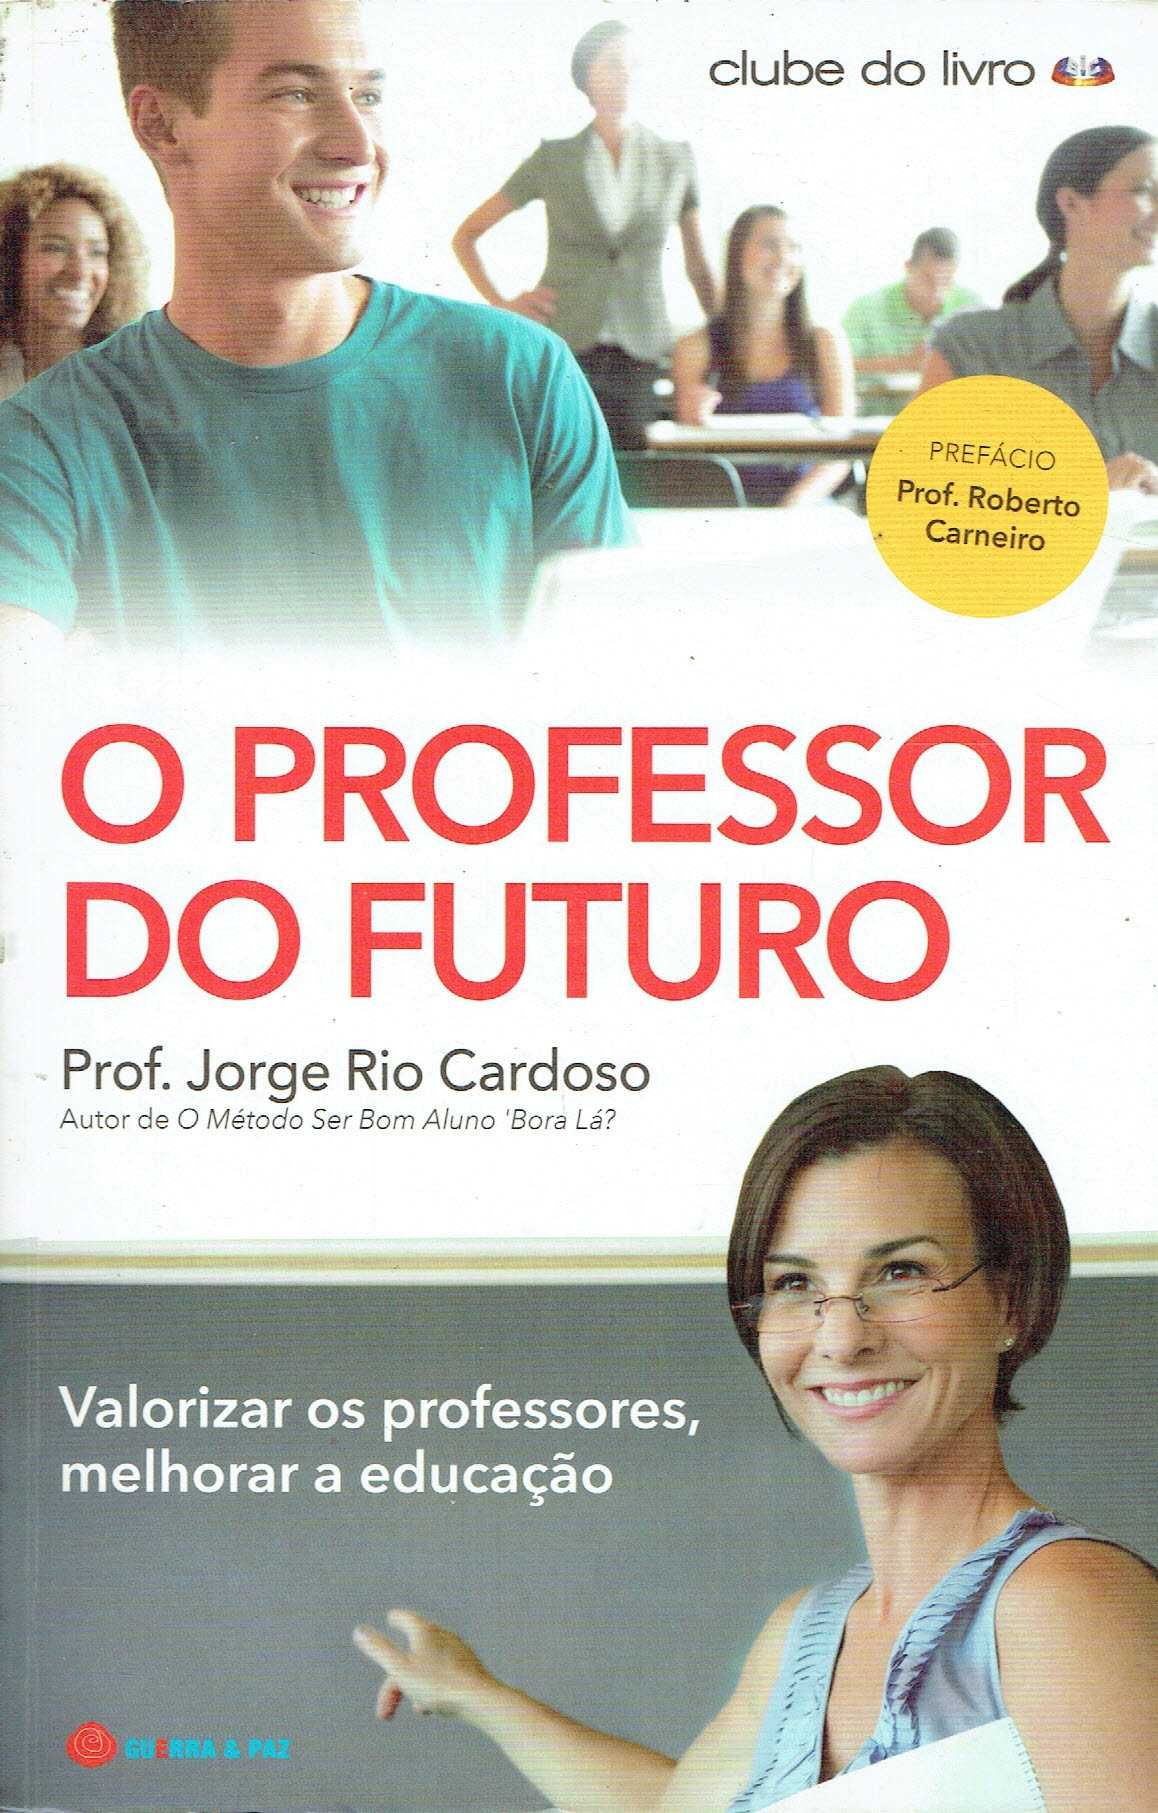 15268

O Professor do Futuro
de Jorge Rio Cardoso